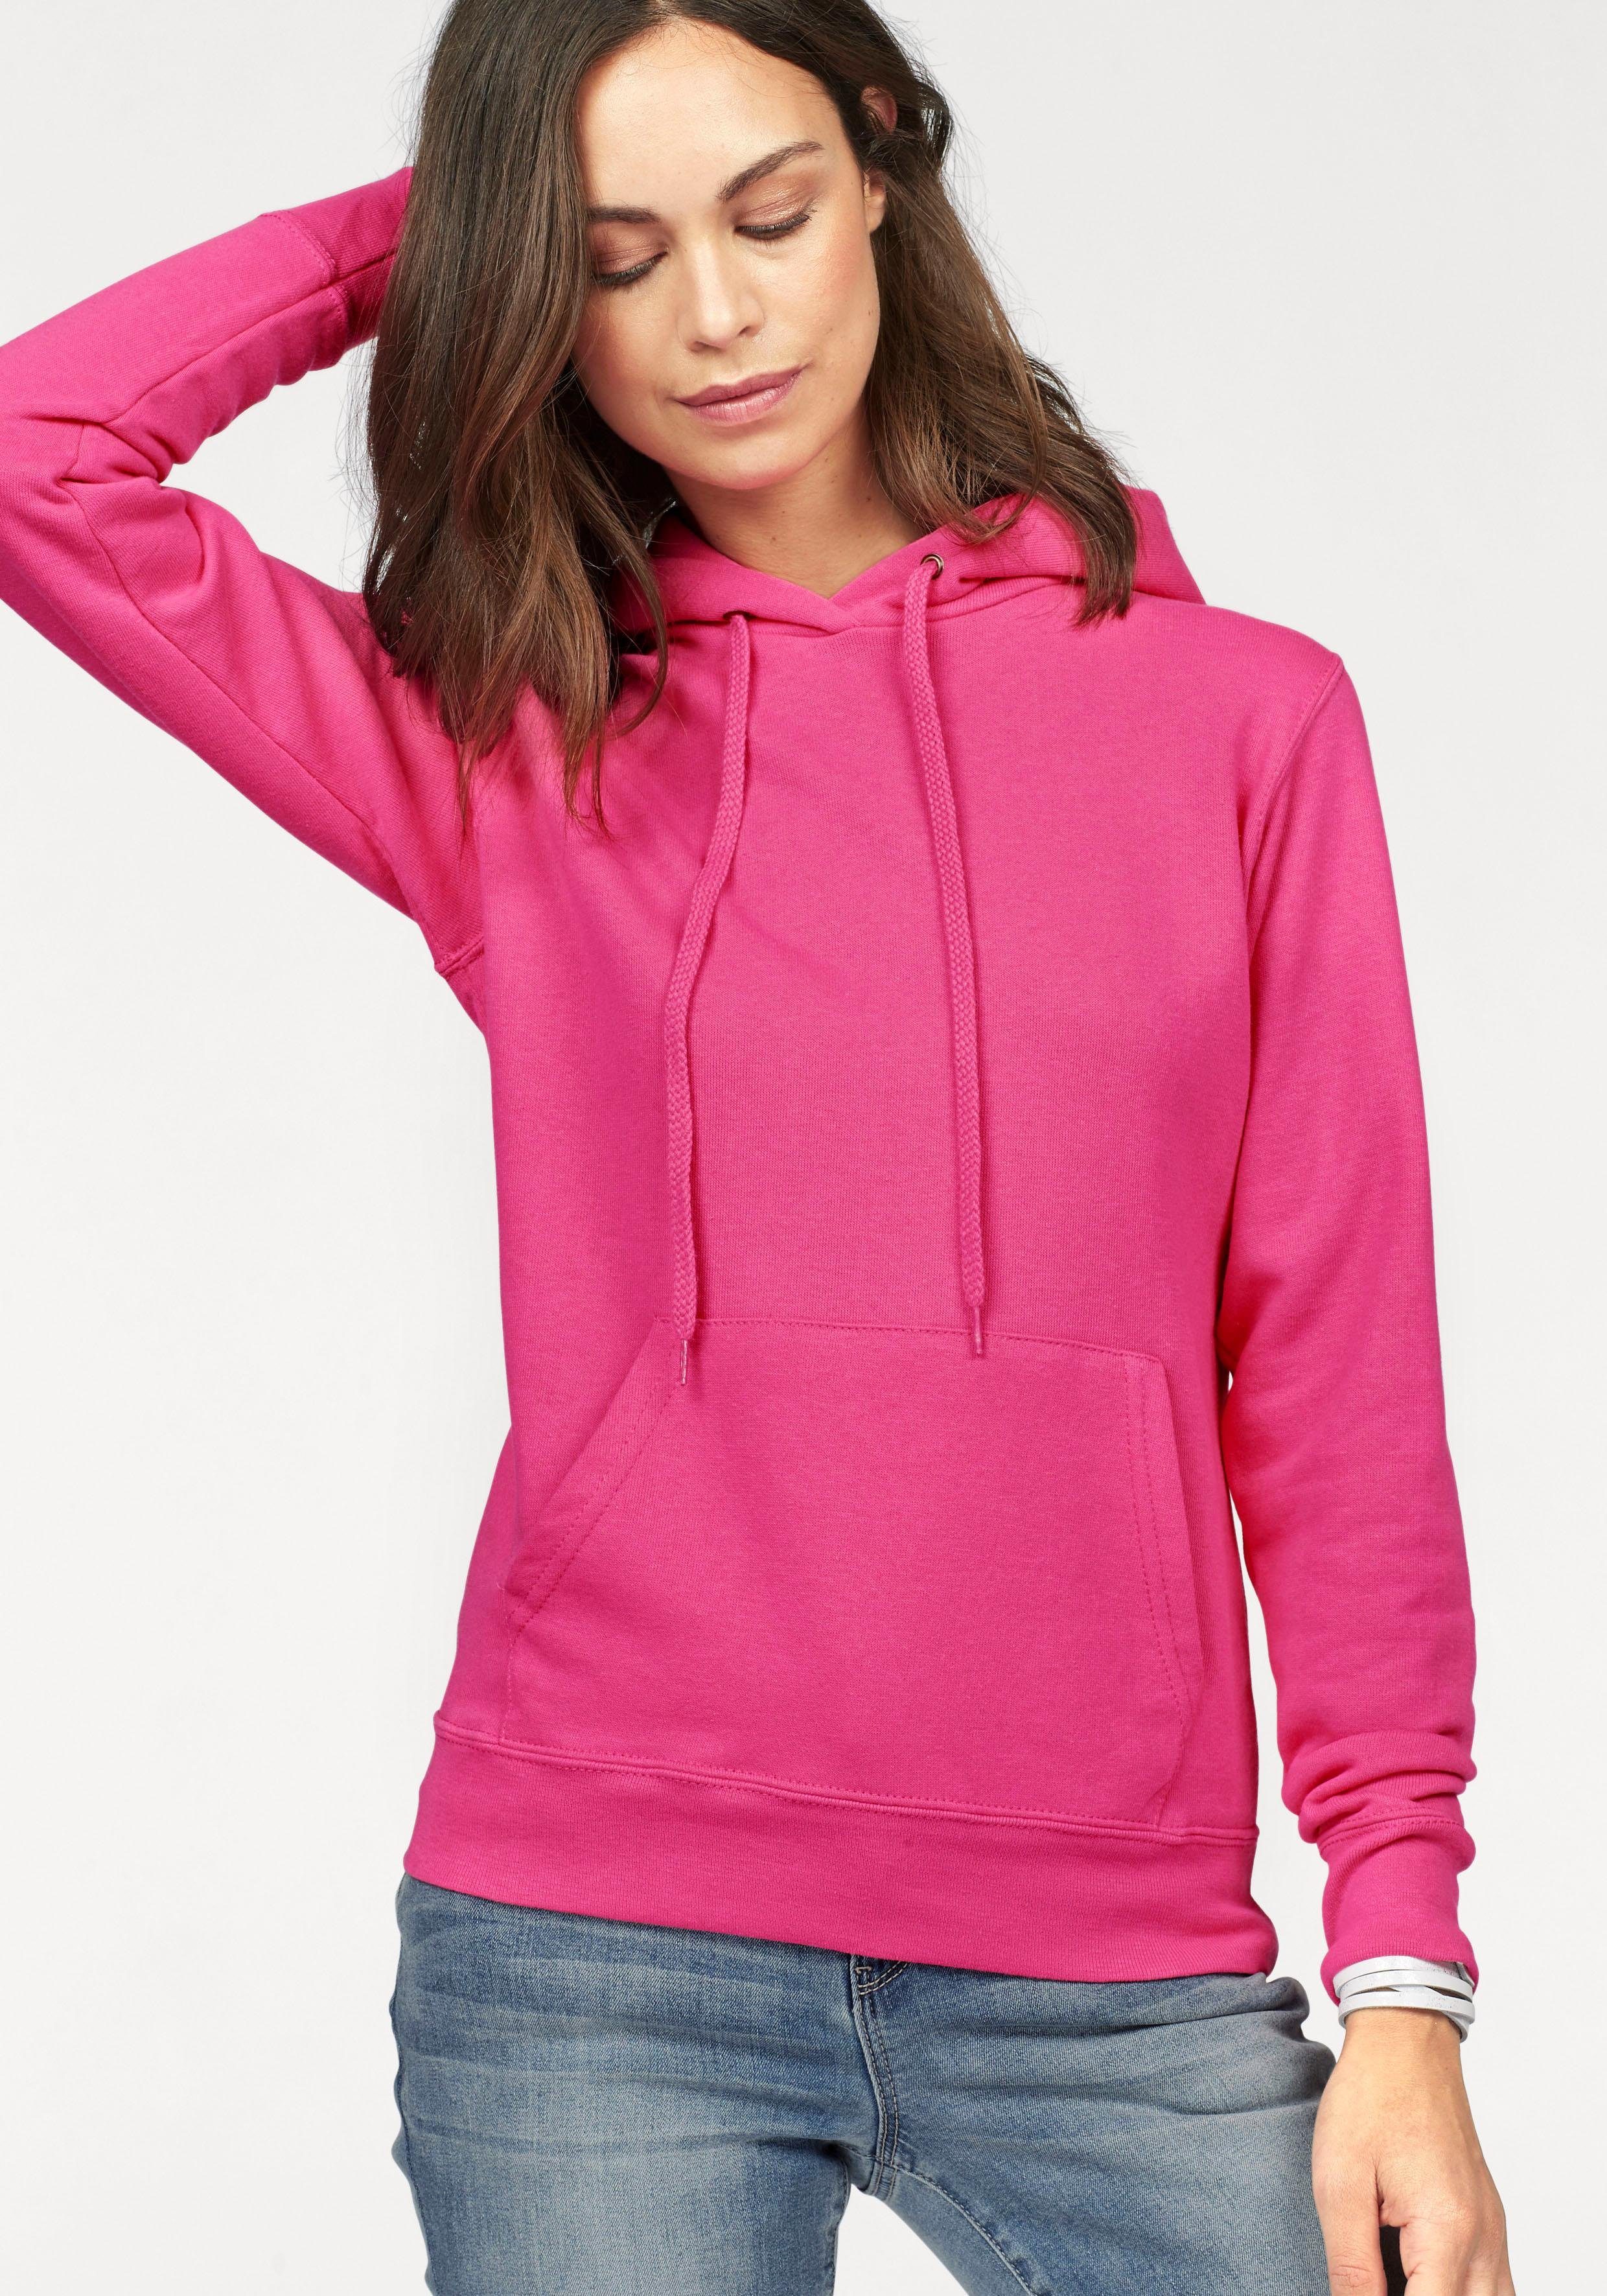 Rosa Hoodies für Damen online kaufen » Pinke Hoodies | OTTO